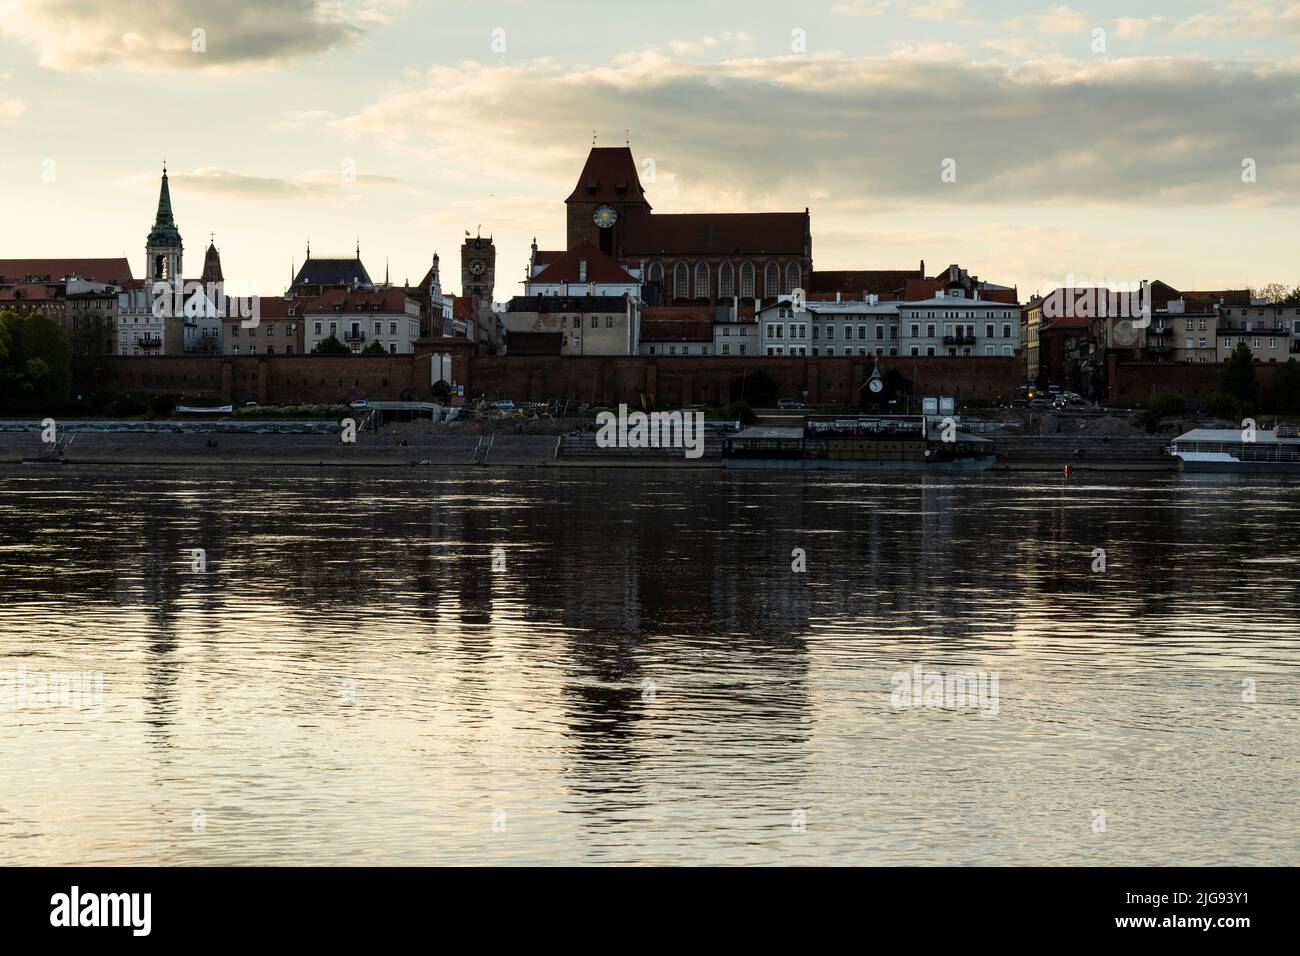 Europe, Poland, Kuyavian-Pomeranian Voivodeship, Torun / Thorn - Old Town seen from the Vistula Stock Photo